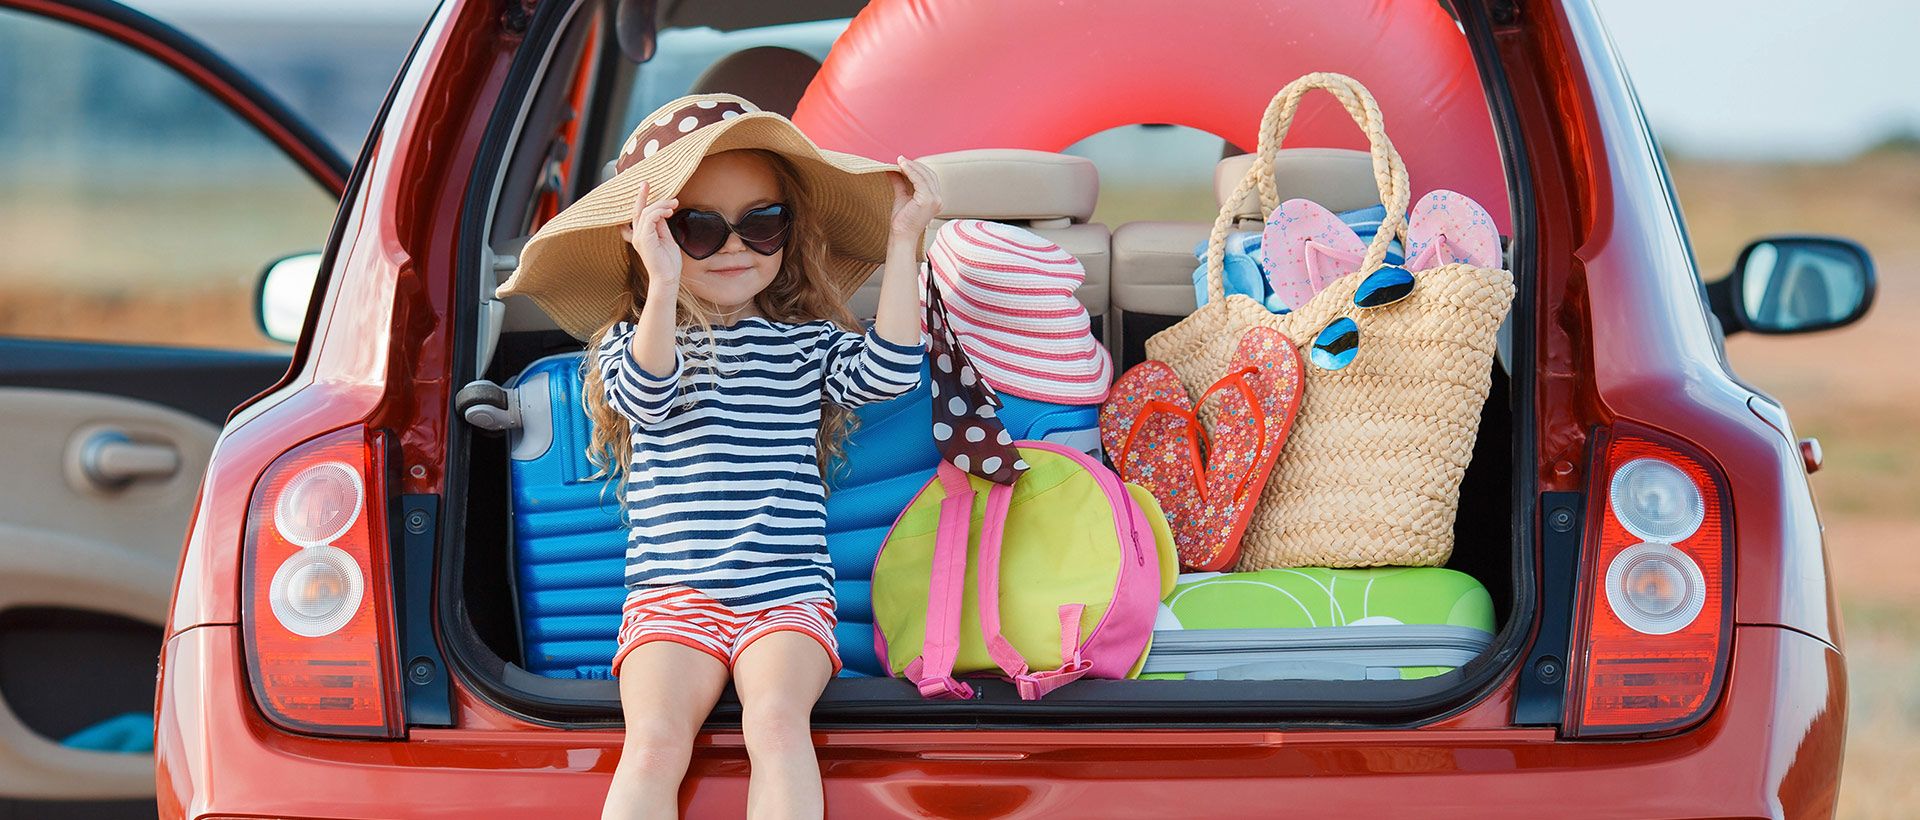 In den Urlaub mit Kindern: 5 praktische Tipps für einen unbeschwerten Urlaub!